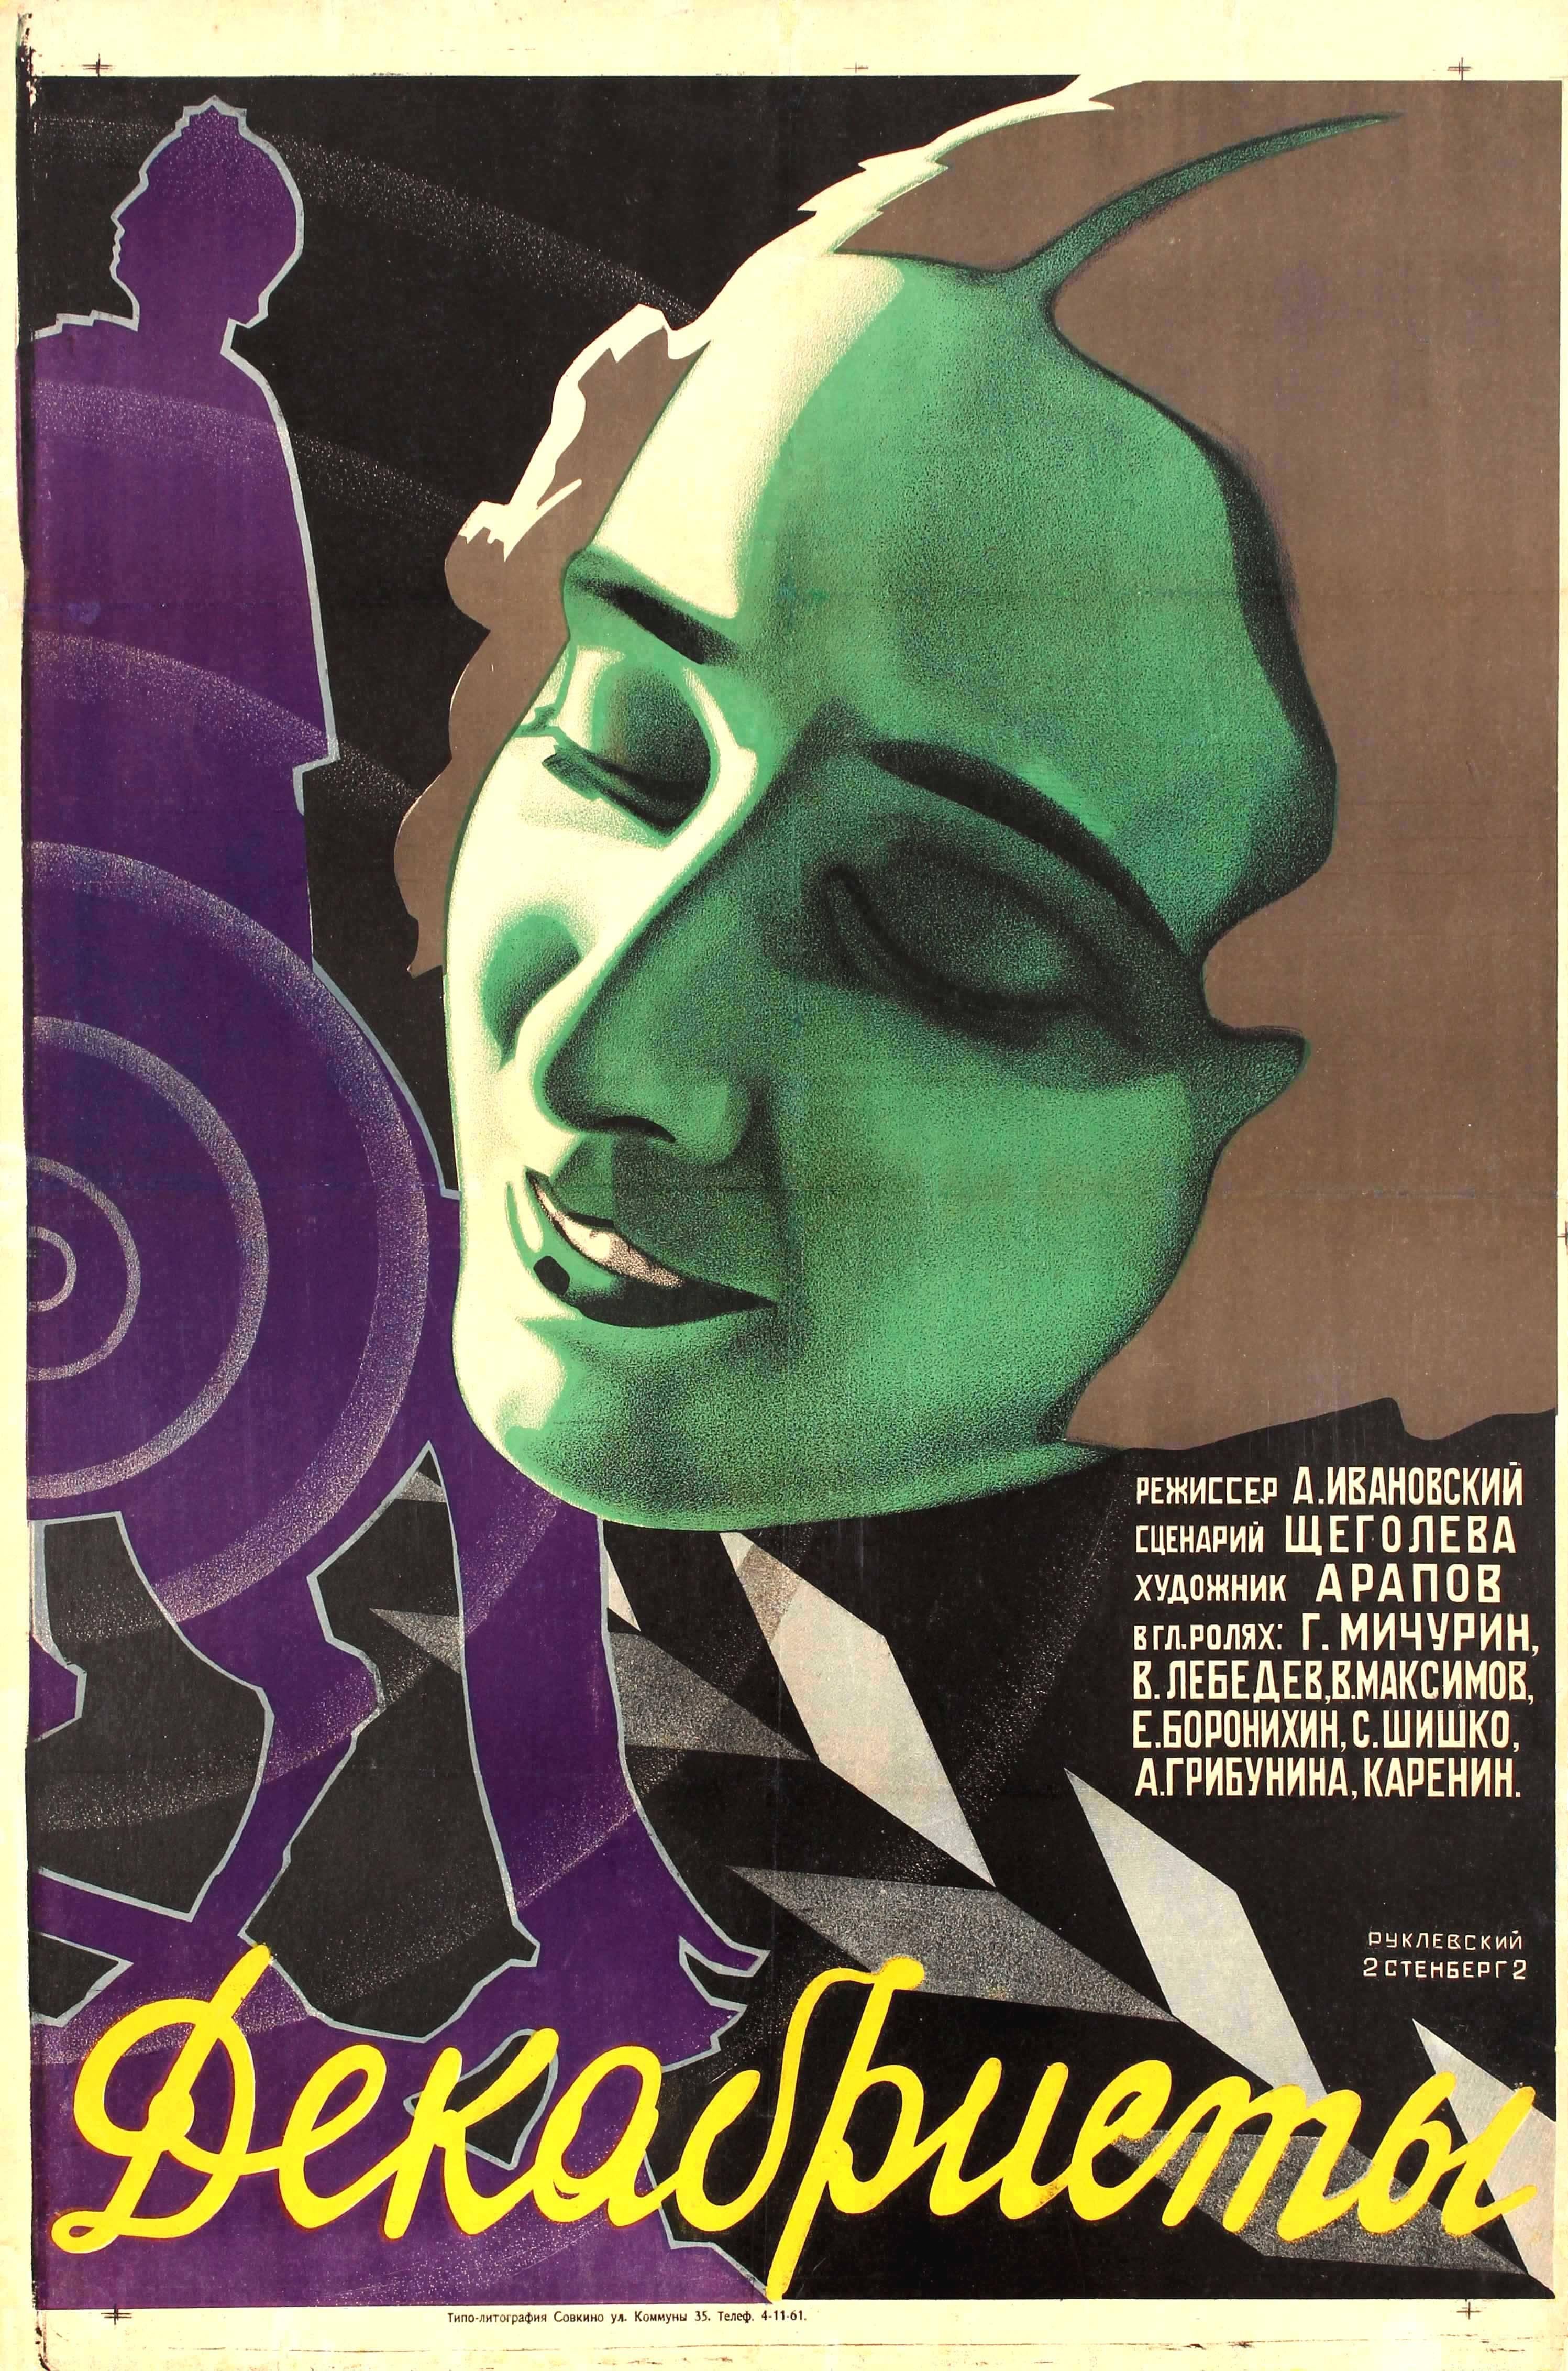 Stenberg Brothers and Yakov Ruklevsky Print - Original Vintage 1927 Constructivist Design Soviet Film Poster For Decembrists